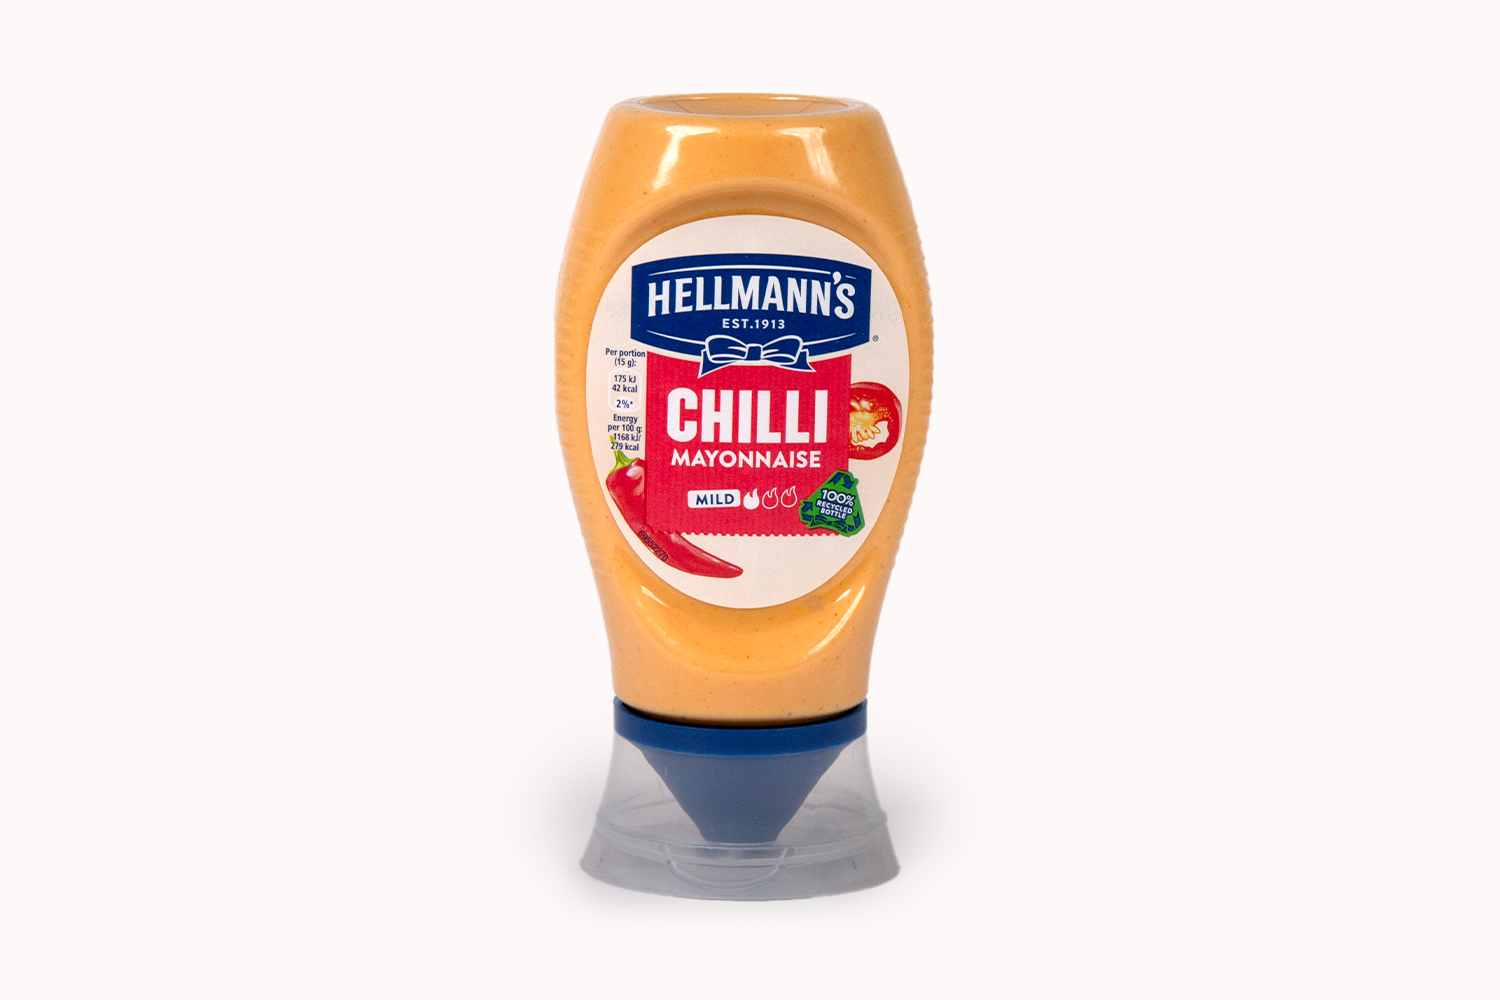 Hellmann's Chilli Mayonnaise - Mild